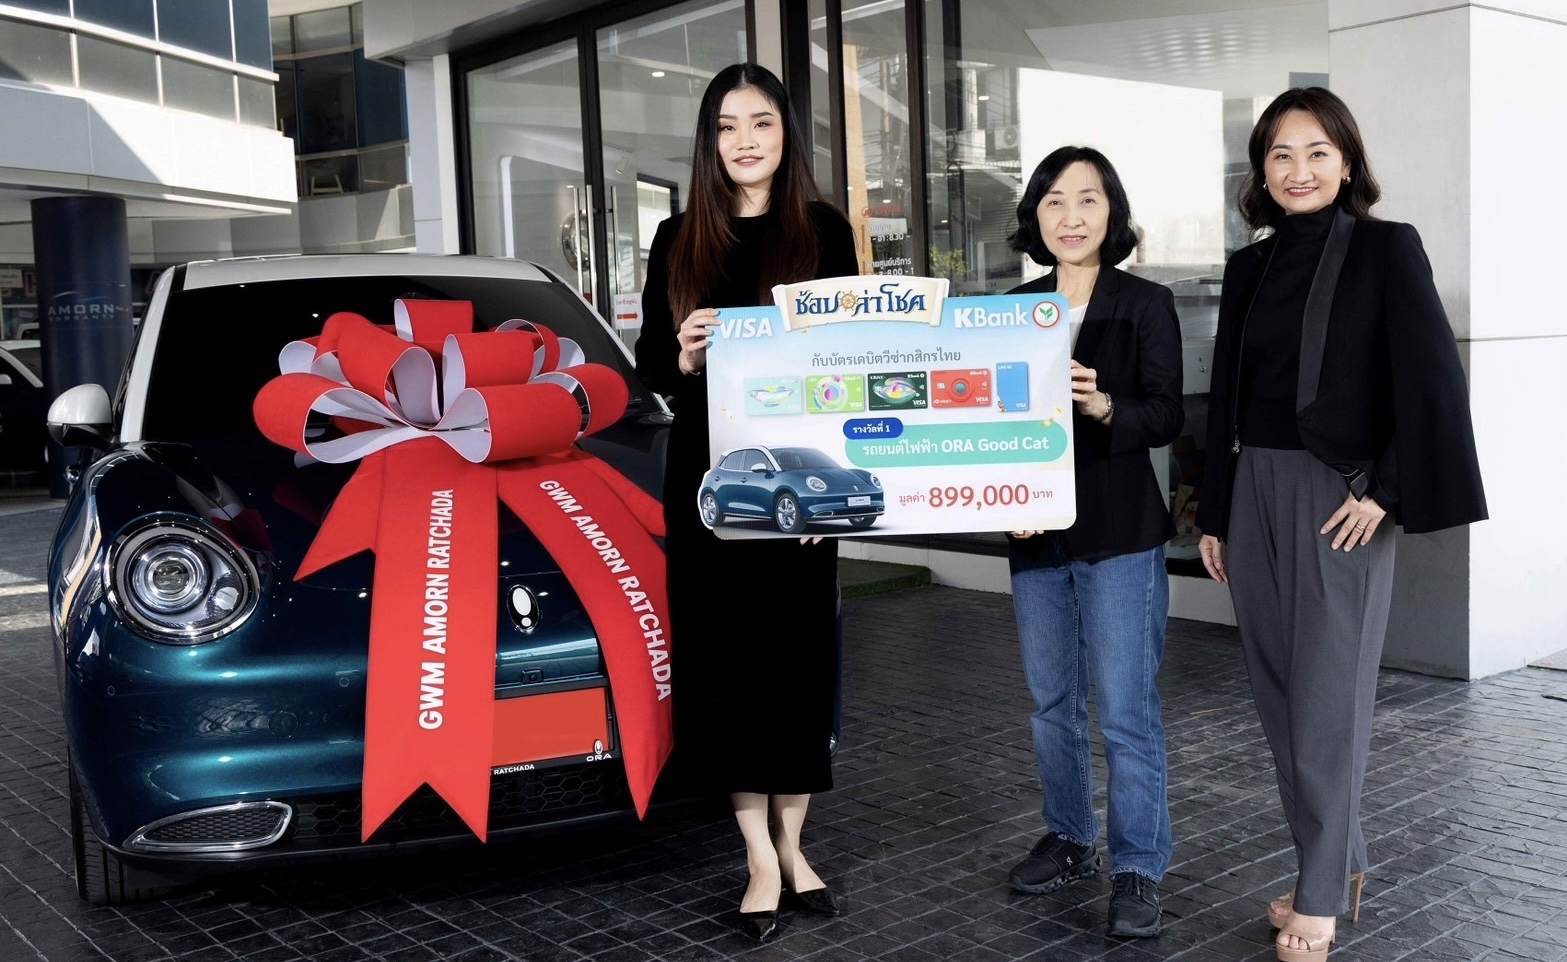 บัตรเดบิตวีซ่ากสิกรไทย มอบรางวัลใหญ่รถยนต์ไฟฟ้าแก่ผู้โชคดีในแคมเปญ “ช้อปล่าโชค”